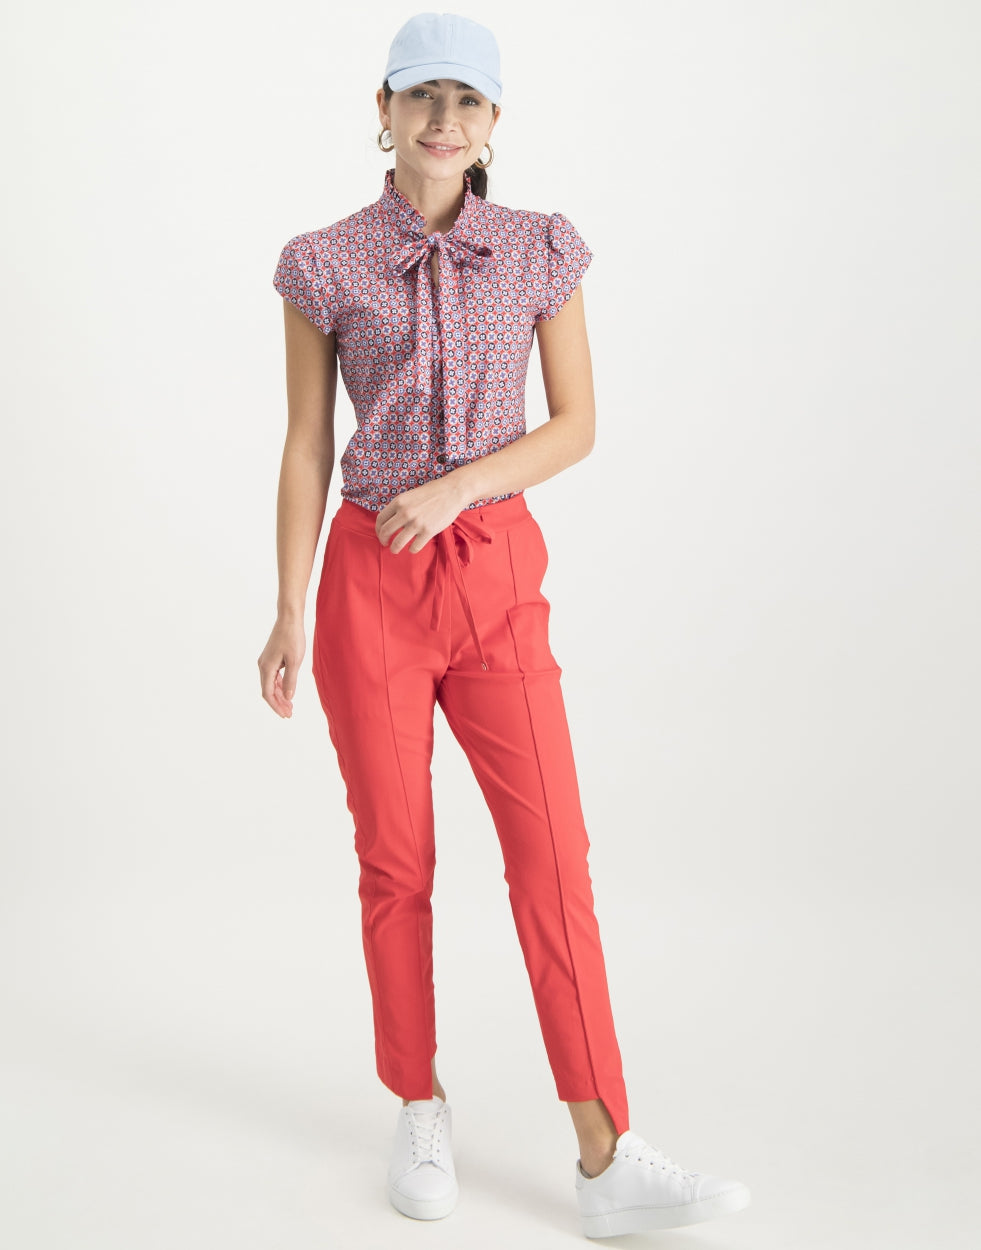 Lilli Asymmetrical Pants | Red